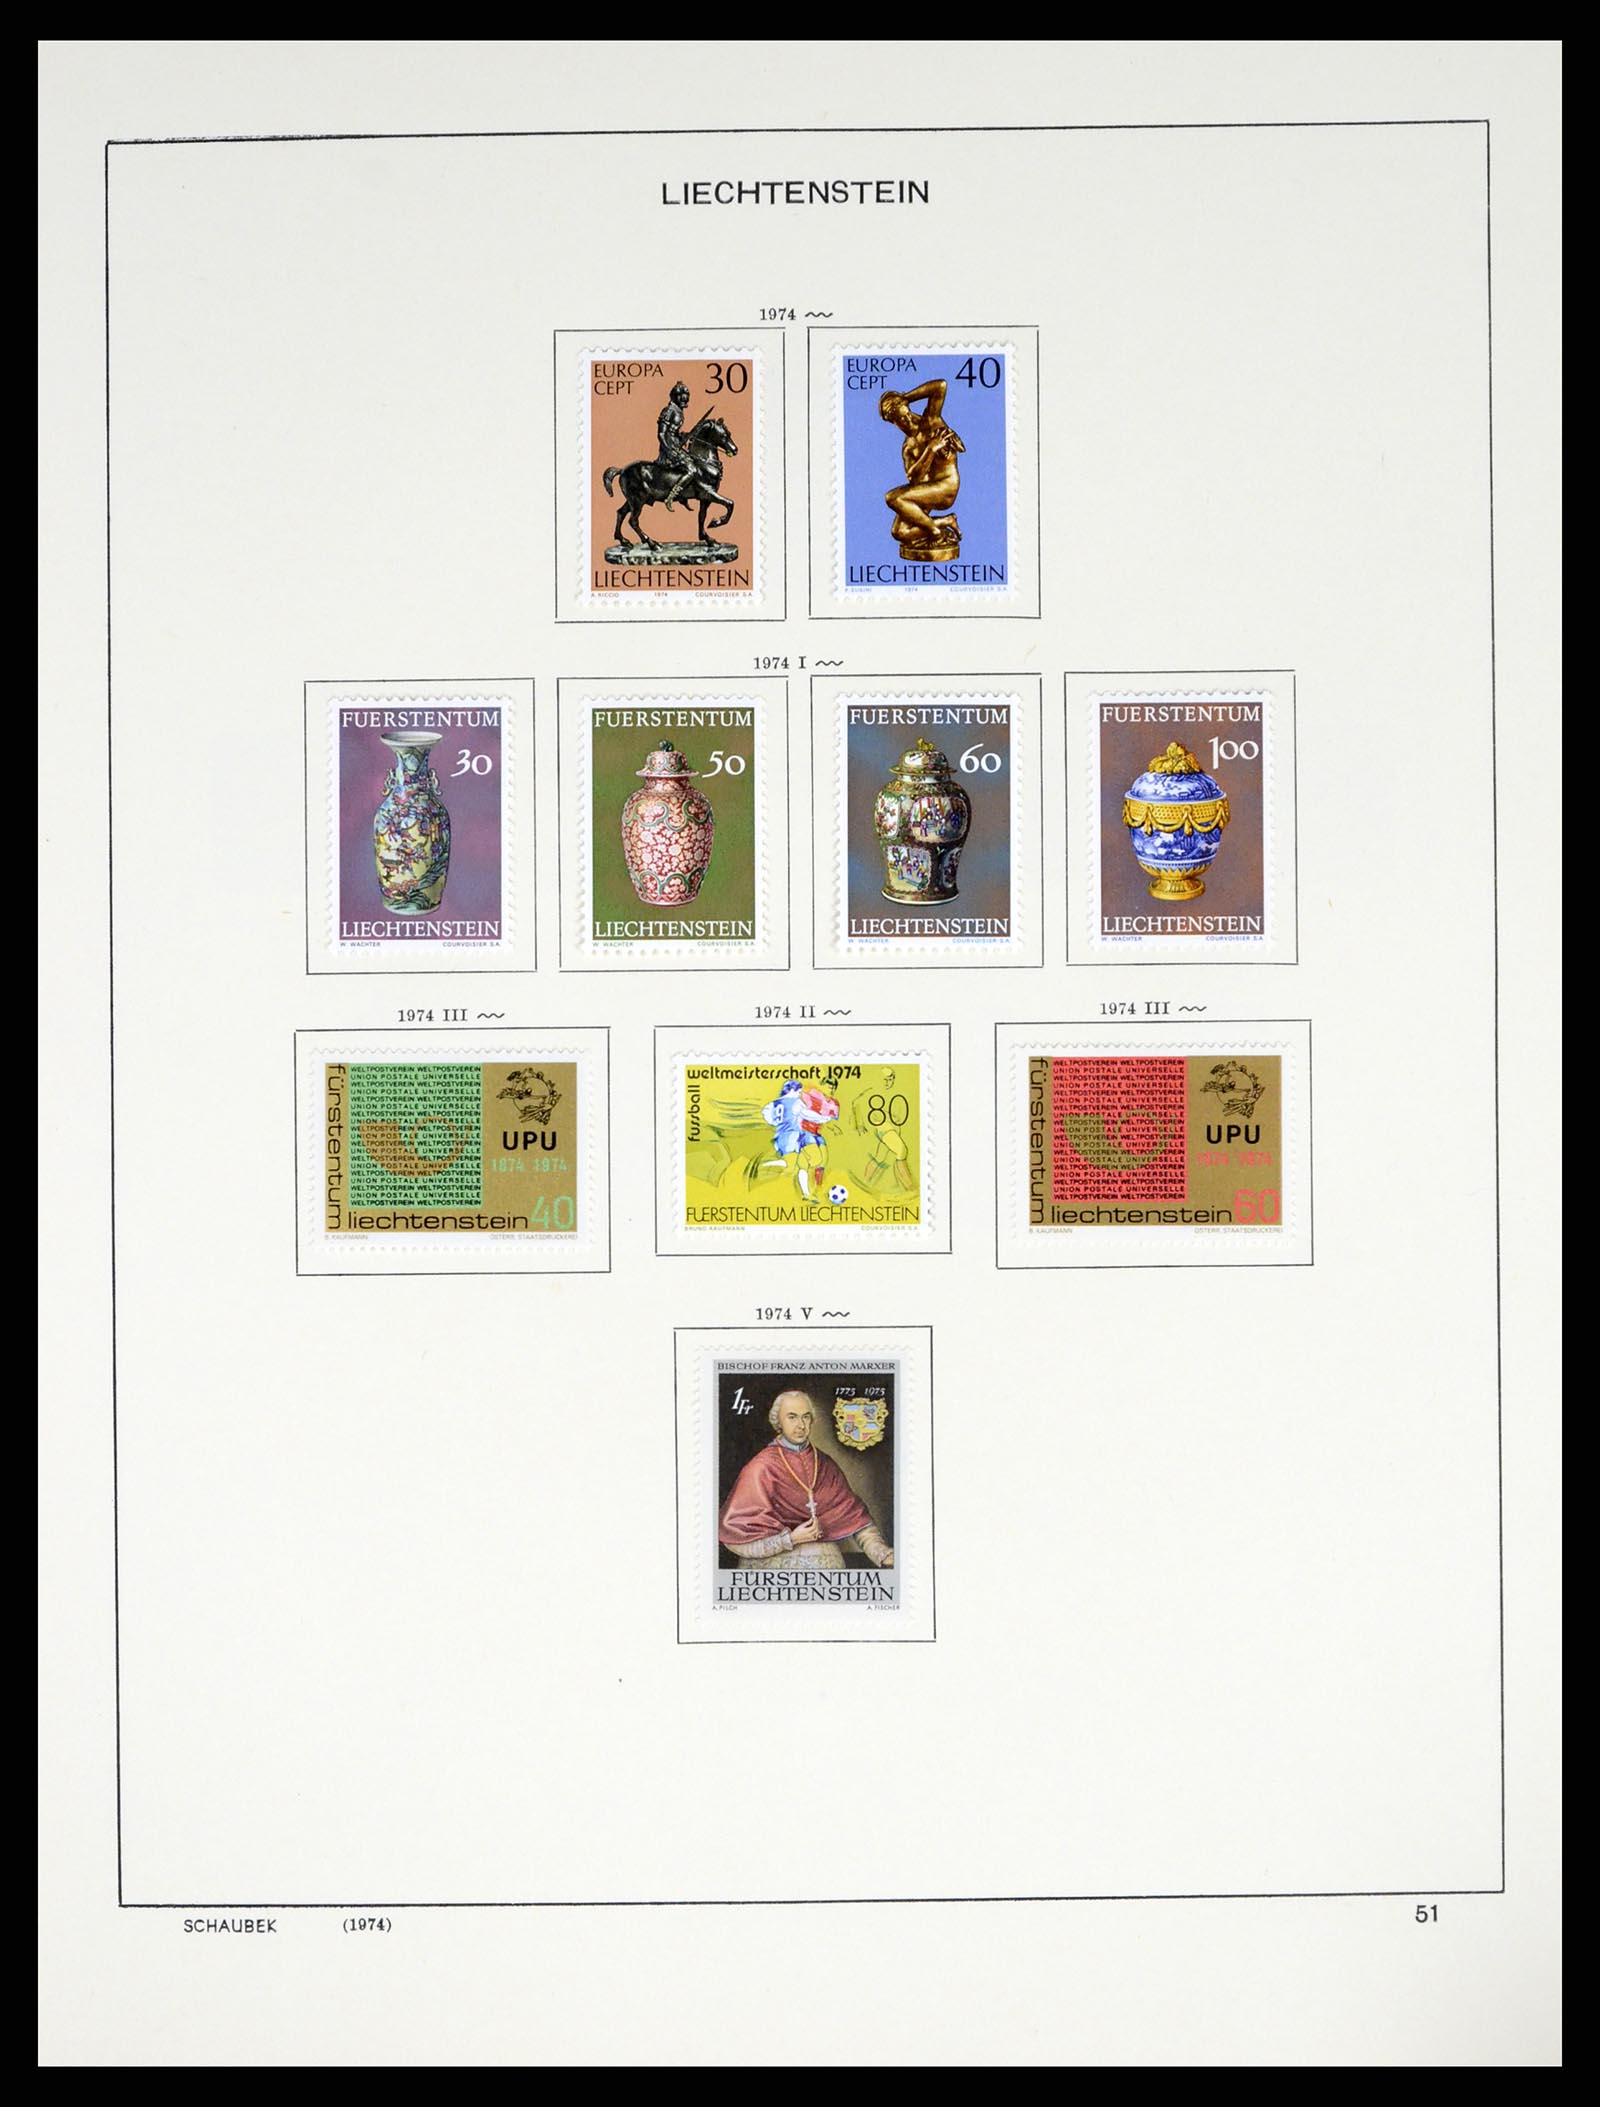 37547 063 - Stamp collection 37547 Liechtenstein 1912-2011.